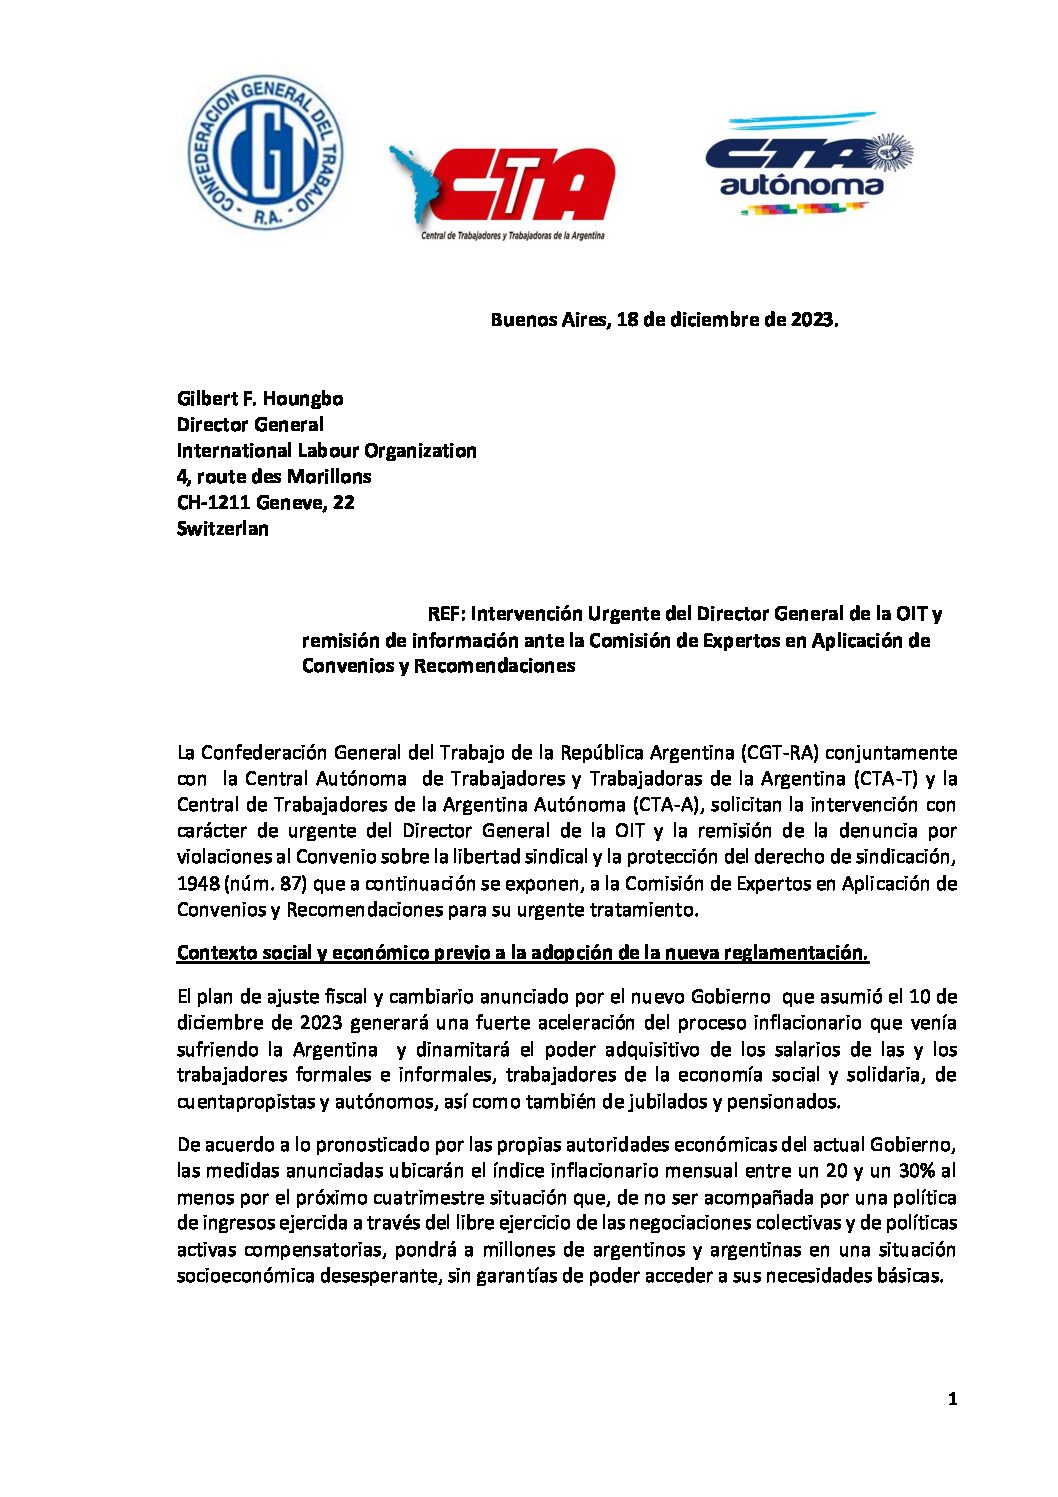 CGT y las dos CTA solicitan intervención urgente de la OIT ante la violación a los derechos sindicales